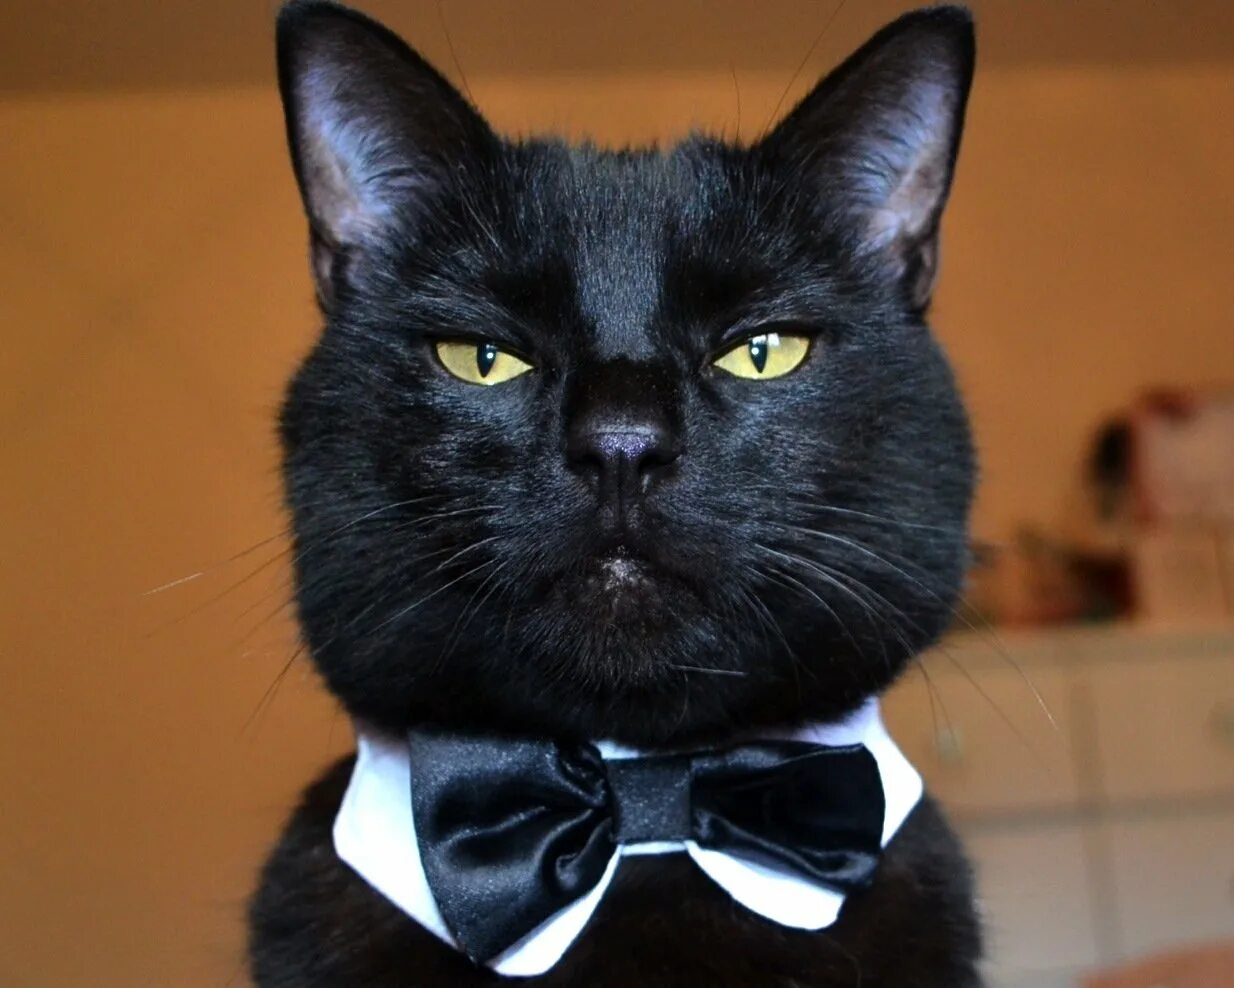 Мистер кот. Серьезный кот. Коты в смокинге. Господин кот. Белый галстук у черного кота 7 букв